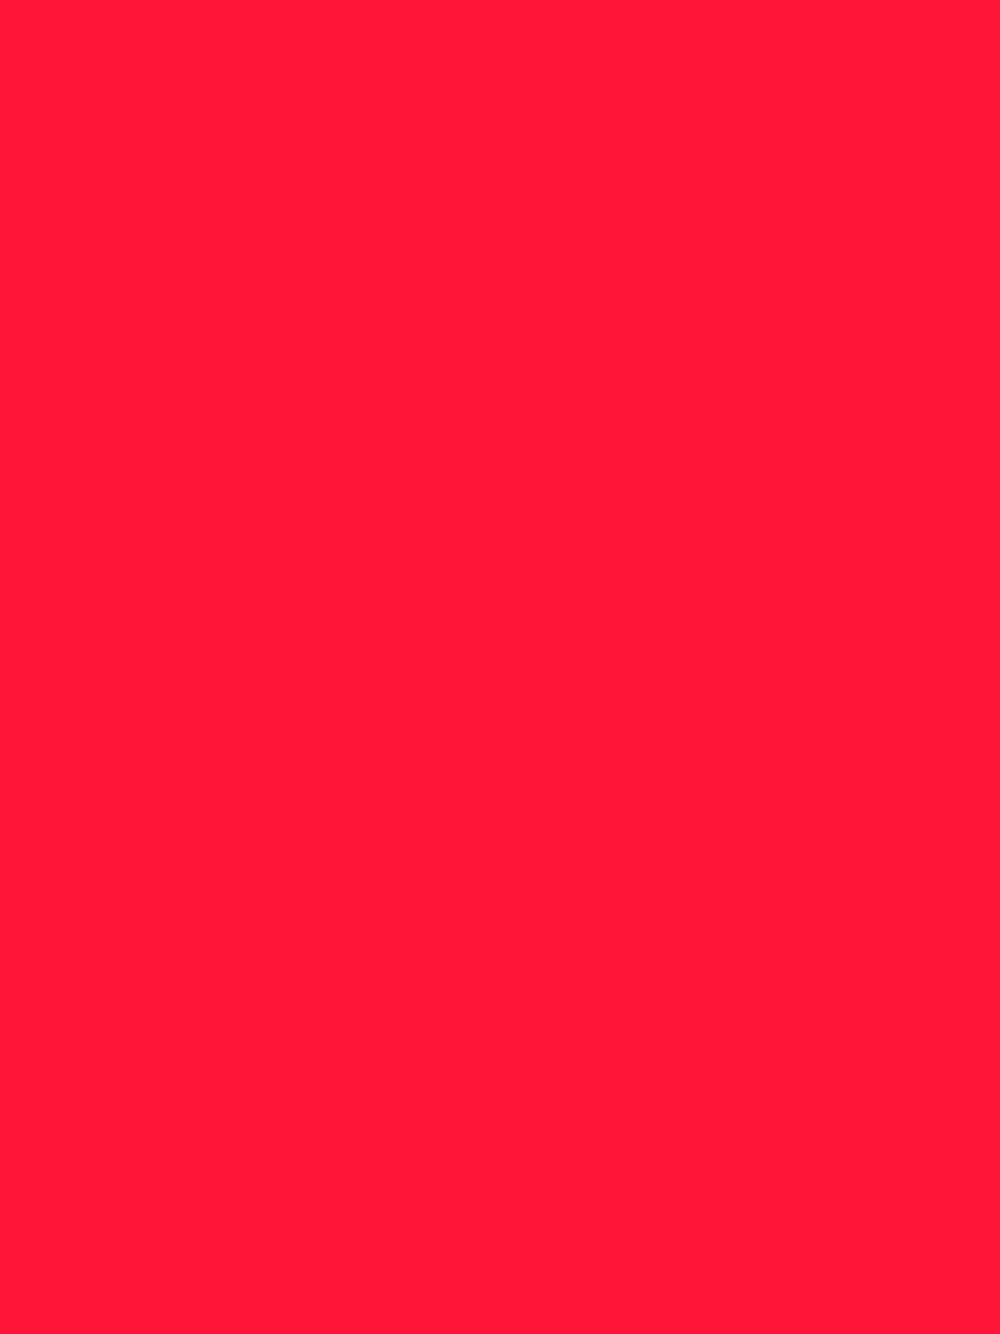 DiFü Digitalführerschein Corporate Design animiertes Fragezeichen in rosa und Pfeilspitzen in helltürkis auf rotem Hintergrund